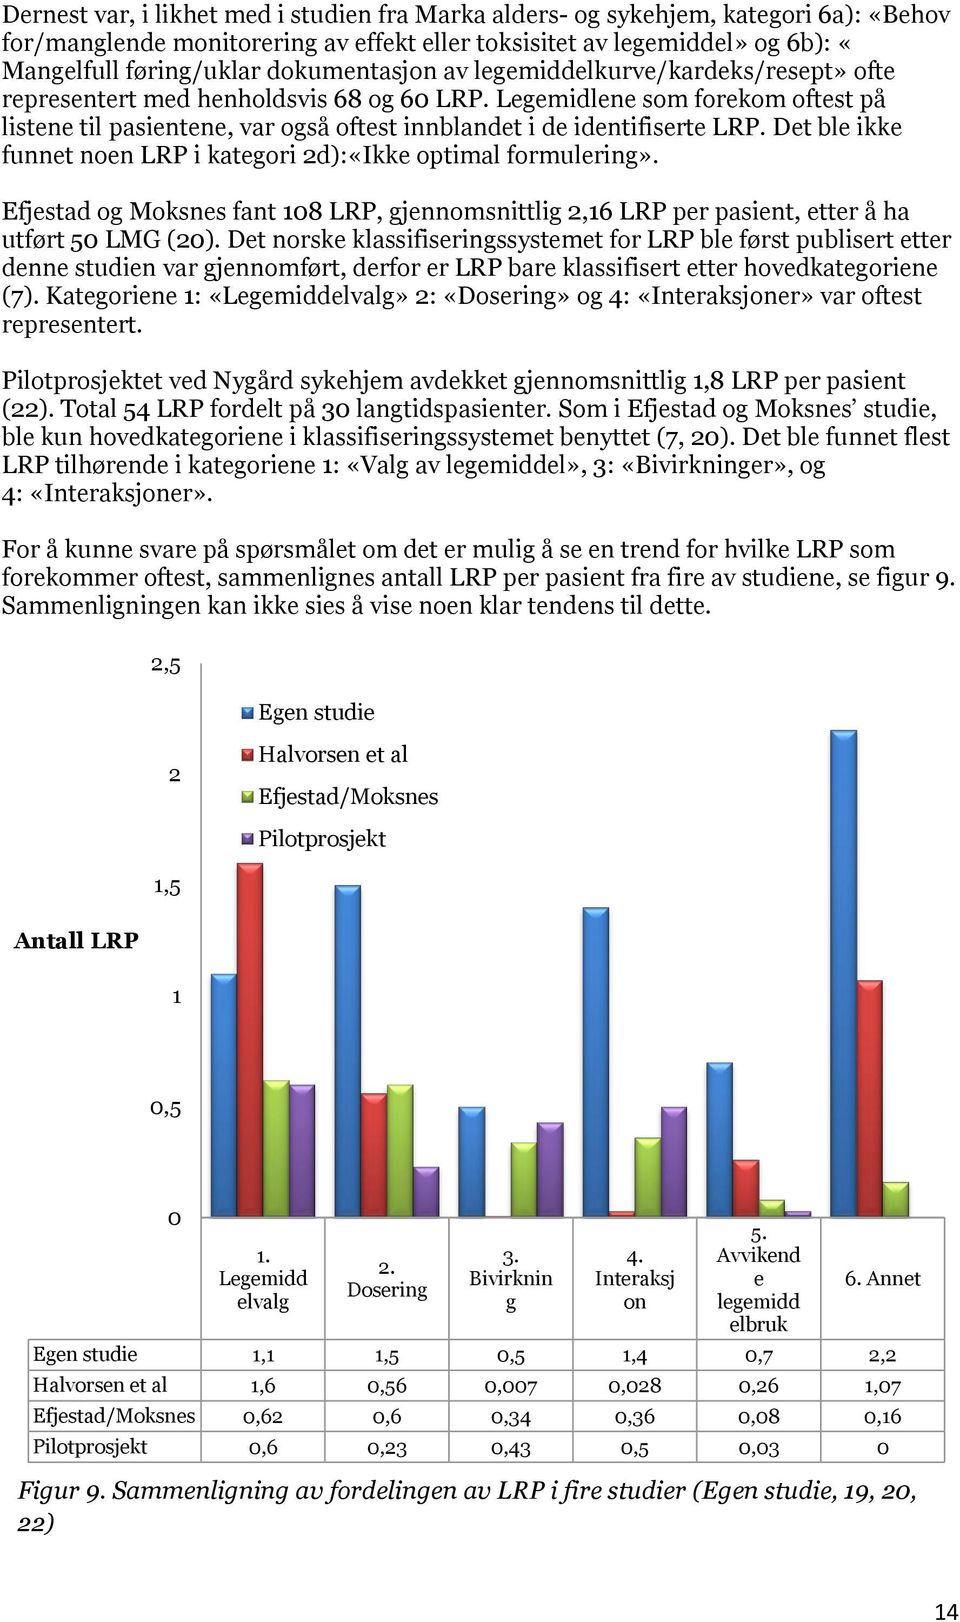 Legemidlene som forekom oftest på listene til pasientene, var også oftest innblandet i de identifiserte LRP. Det ble ikke funnet noen LRP i kategori 2d):«Ikke optimal formulering».